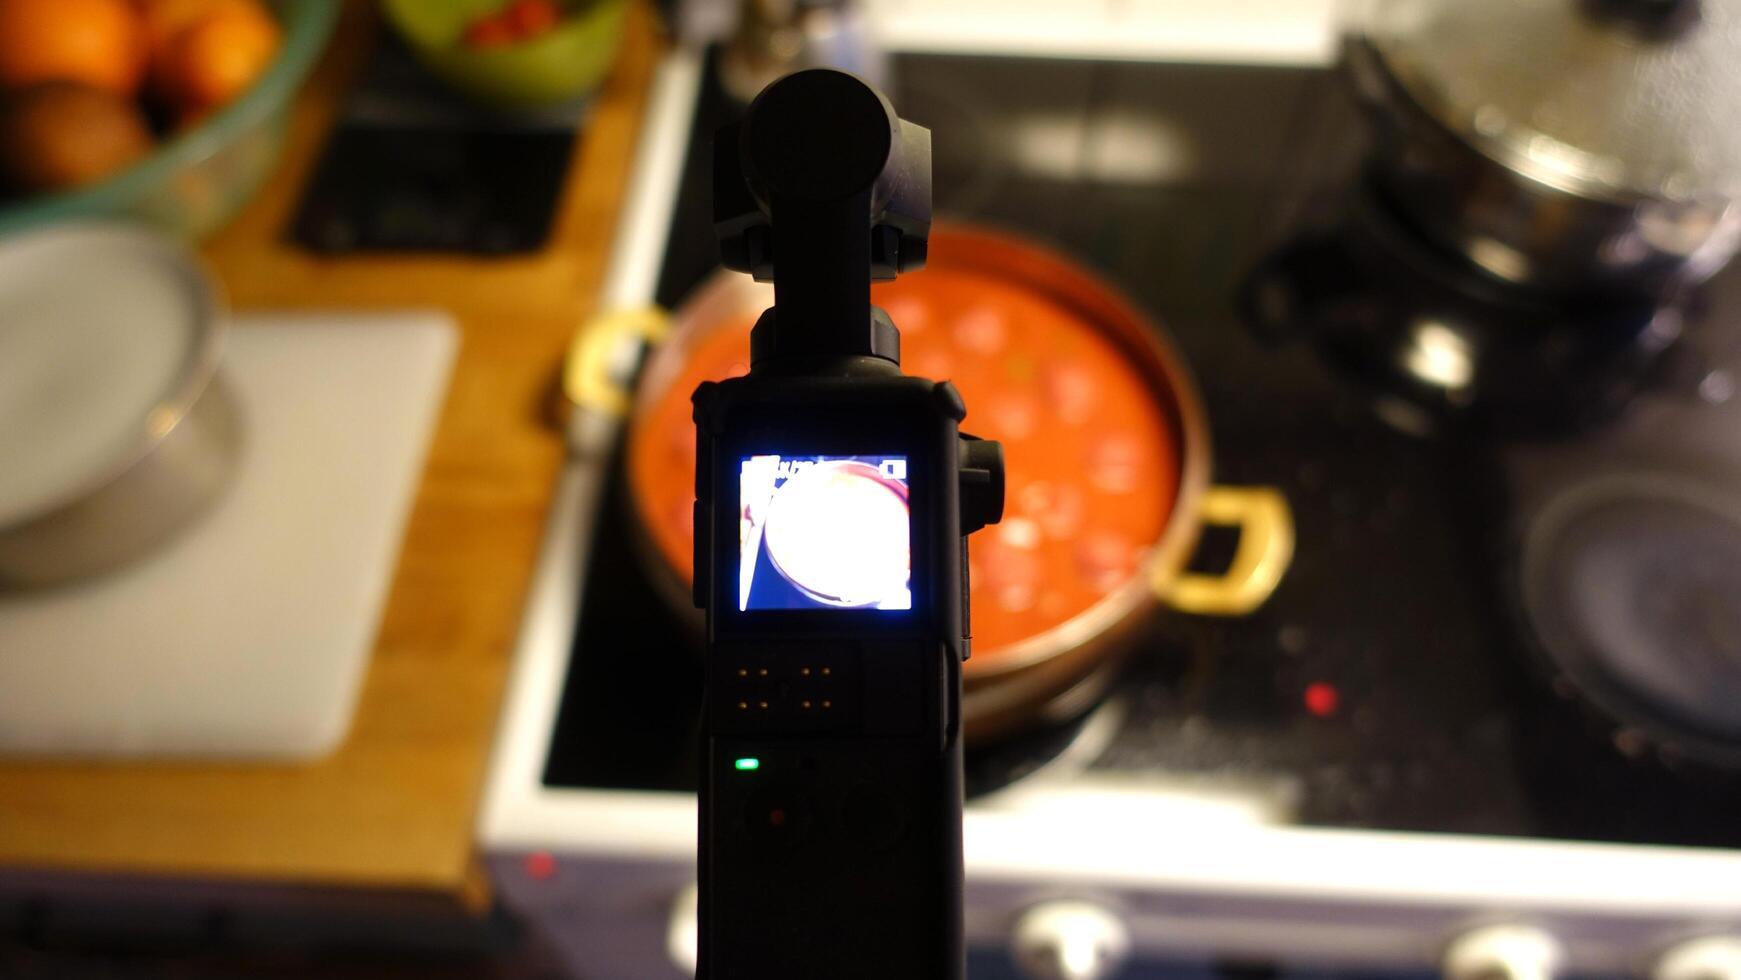 une numérique caméra est tournage fait maison Boulettes de viande mijoter dans tomate sauce photo